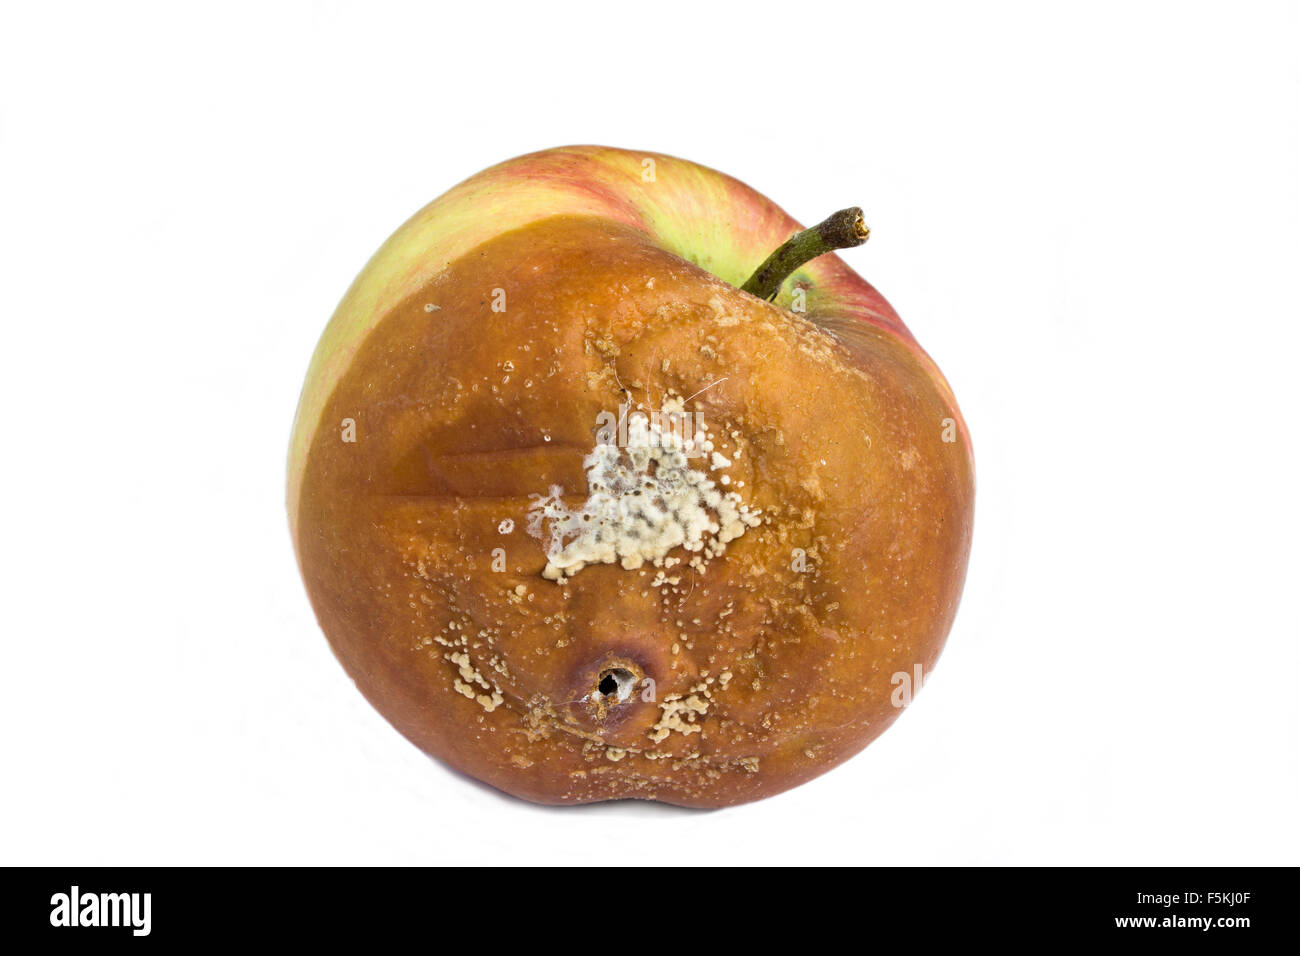 Rotten apple Stock Photo